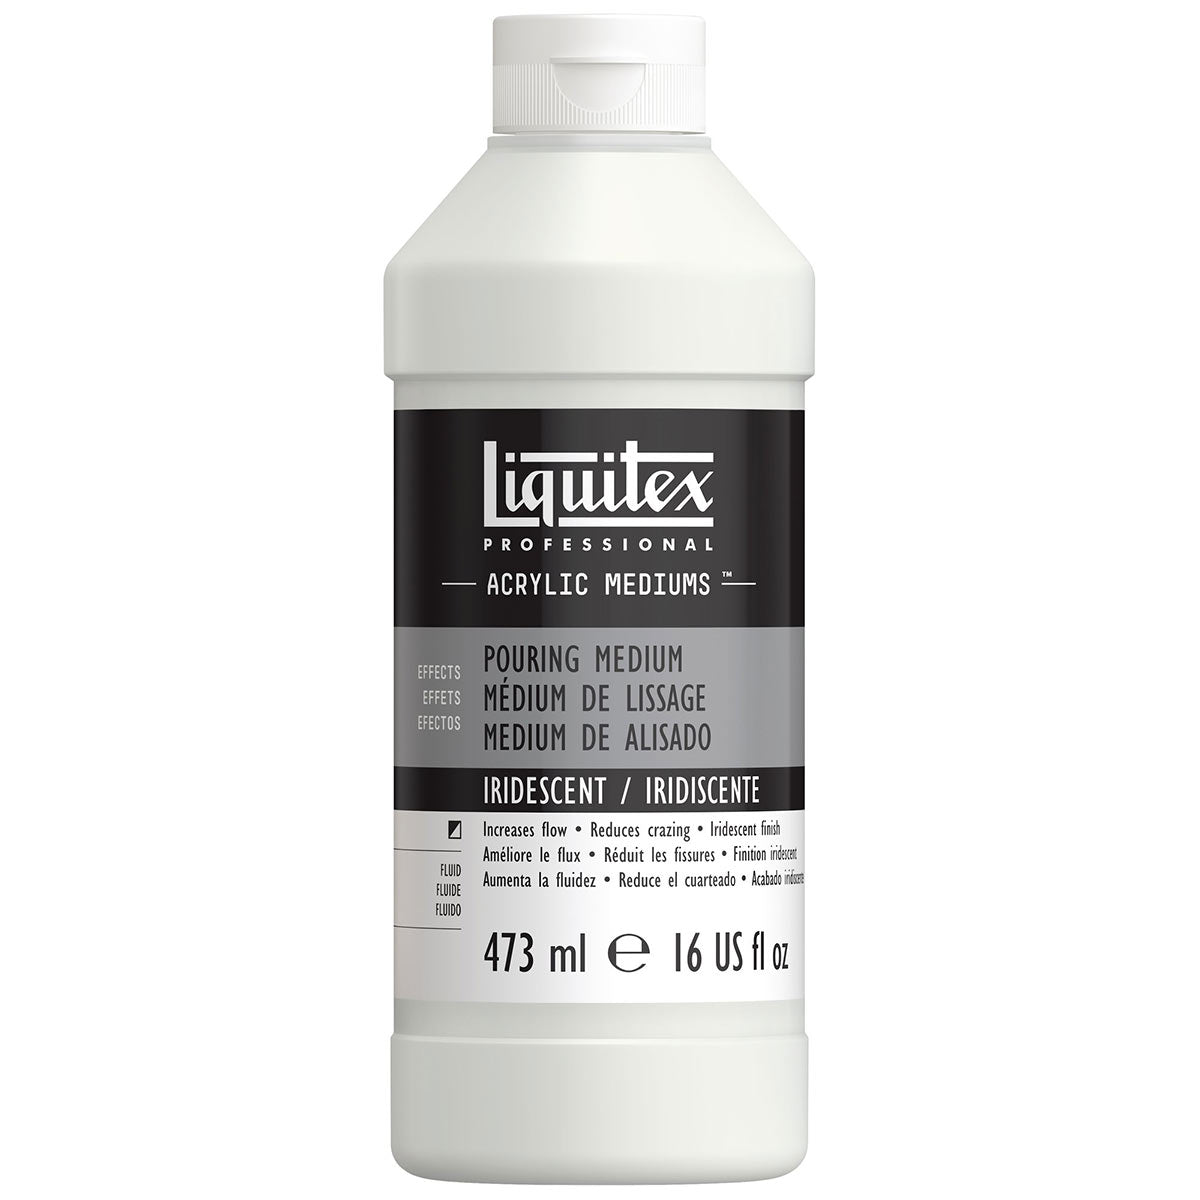 Liquitex - Pouring Medium Iridescent Finish 473ml